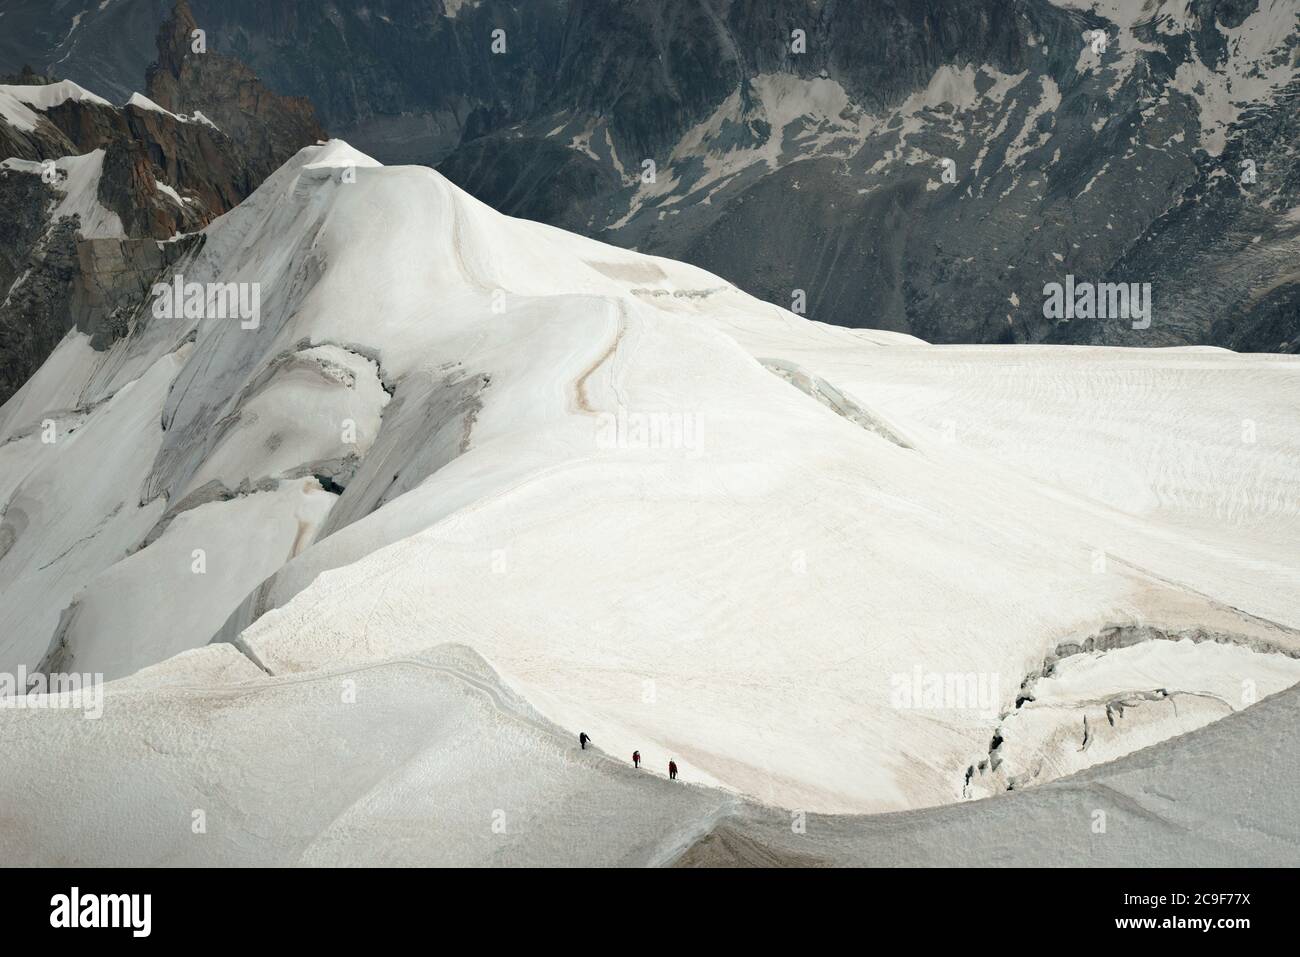 Trois grimpeurs marchant le long d'une crête enneigée, en hauteur dans les montagnes. Ils sont éclipsés par l'échelle du paysage épique qui les entoure. Banque D'Images